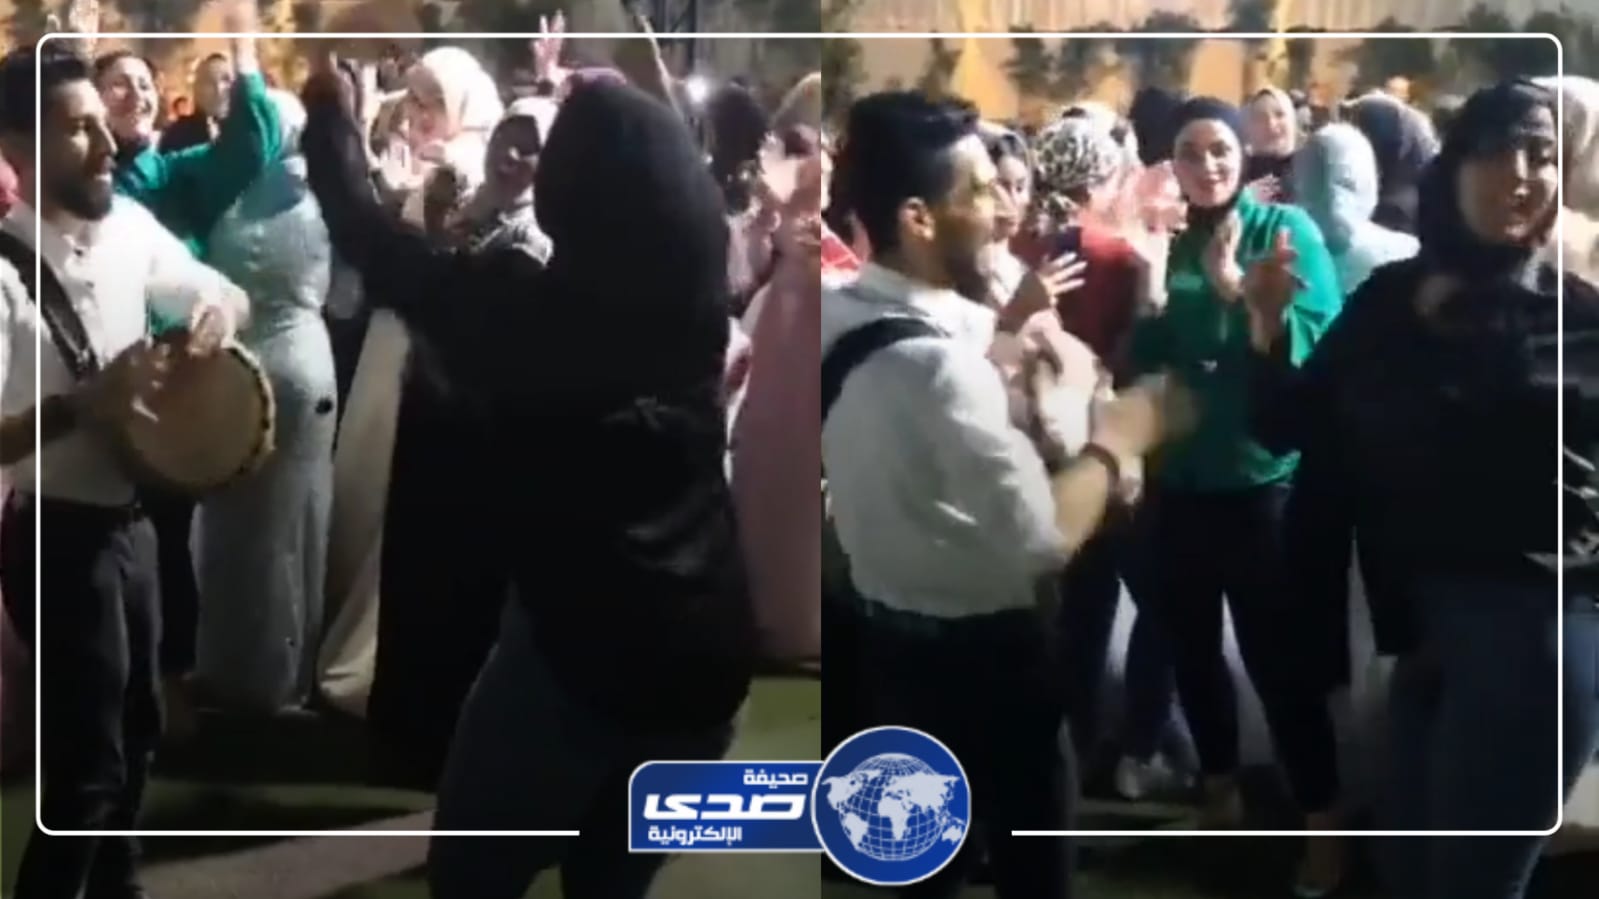 رقص فتاة بطريقة مُخجلة يحرج عروس مصرية في ليلة عمرها .. فيديو